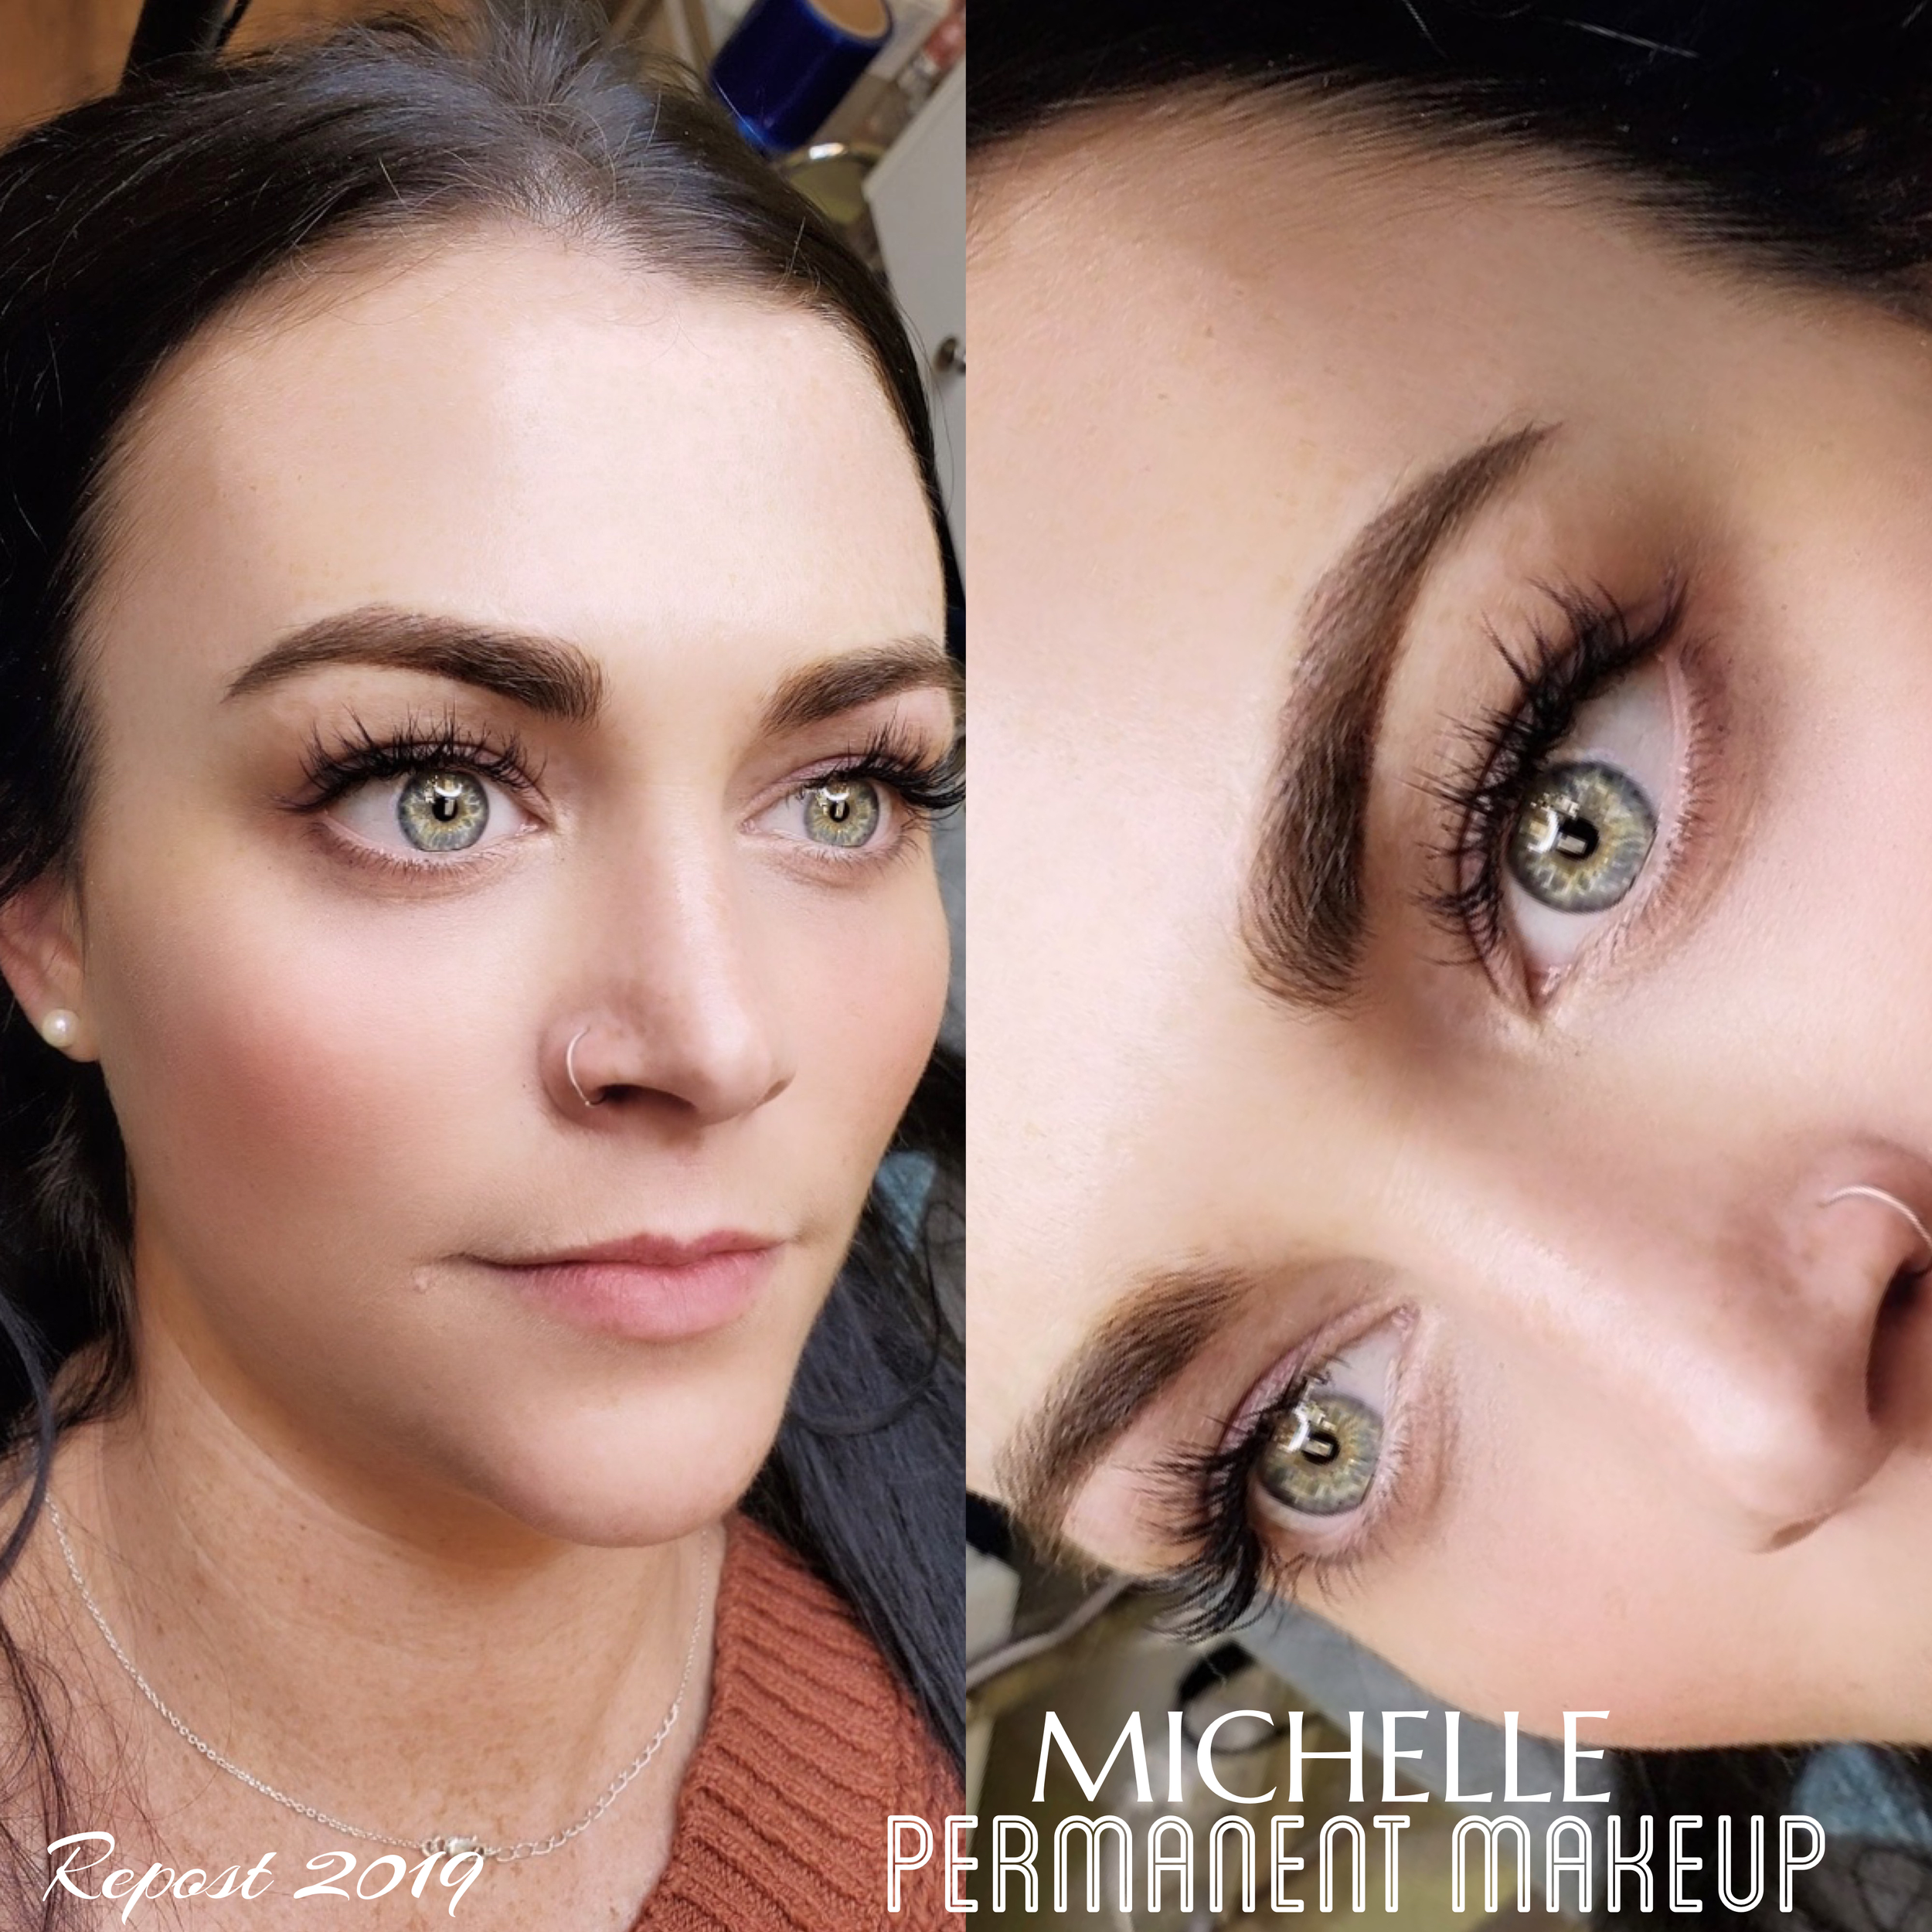 Services — Michelle Permanent Makeup